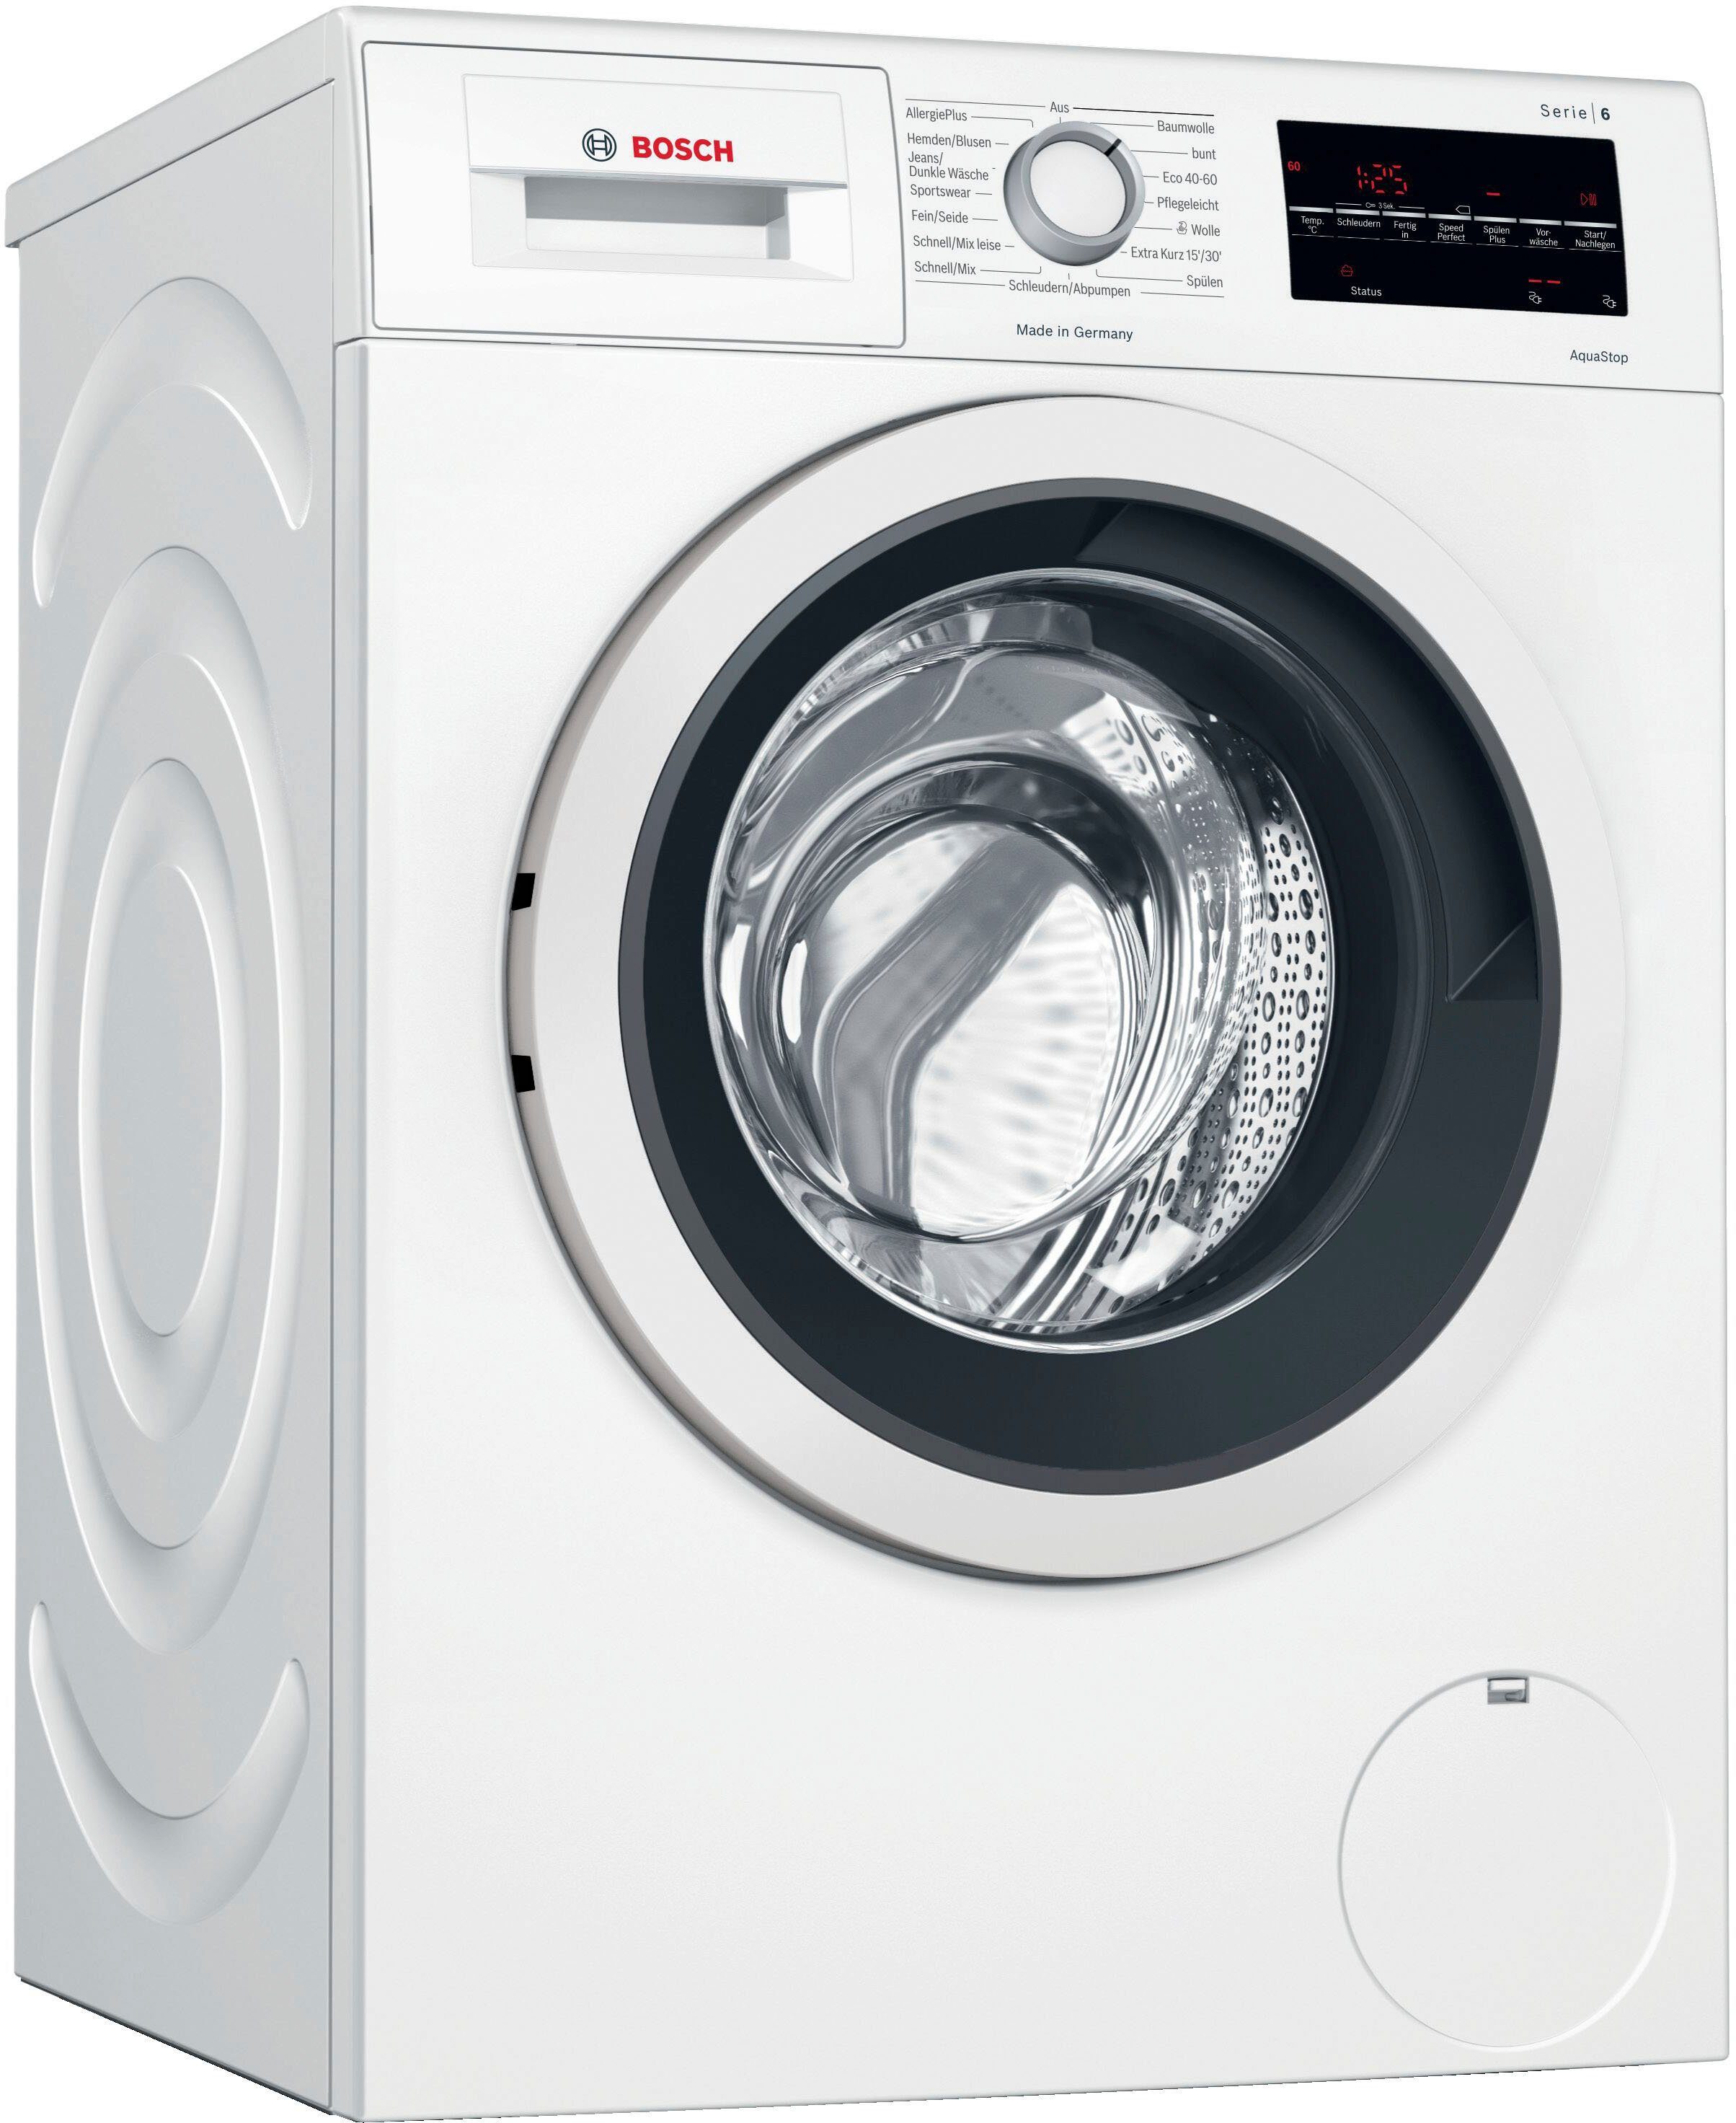 BOSCH Waschmaschine Serie 6 WAG28400, 8 kg, 1400 U/min online kaufen | OTTO